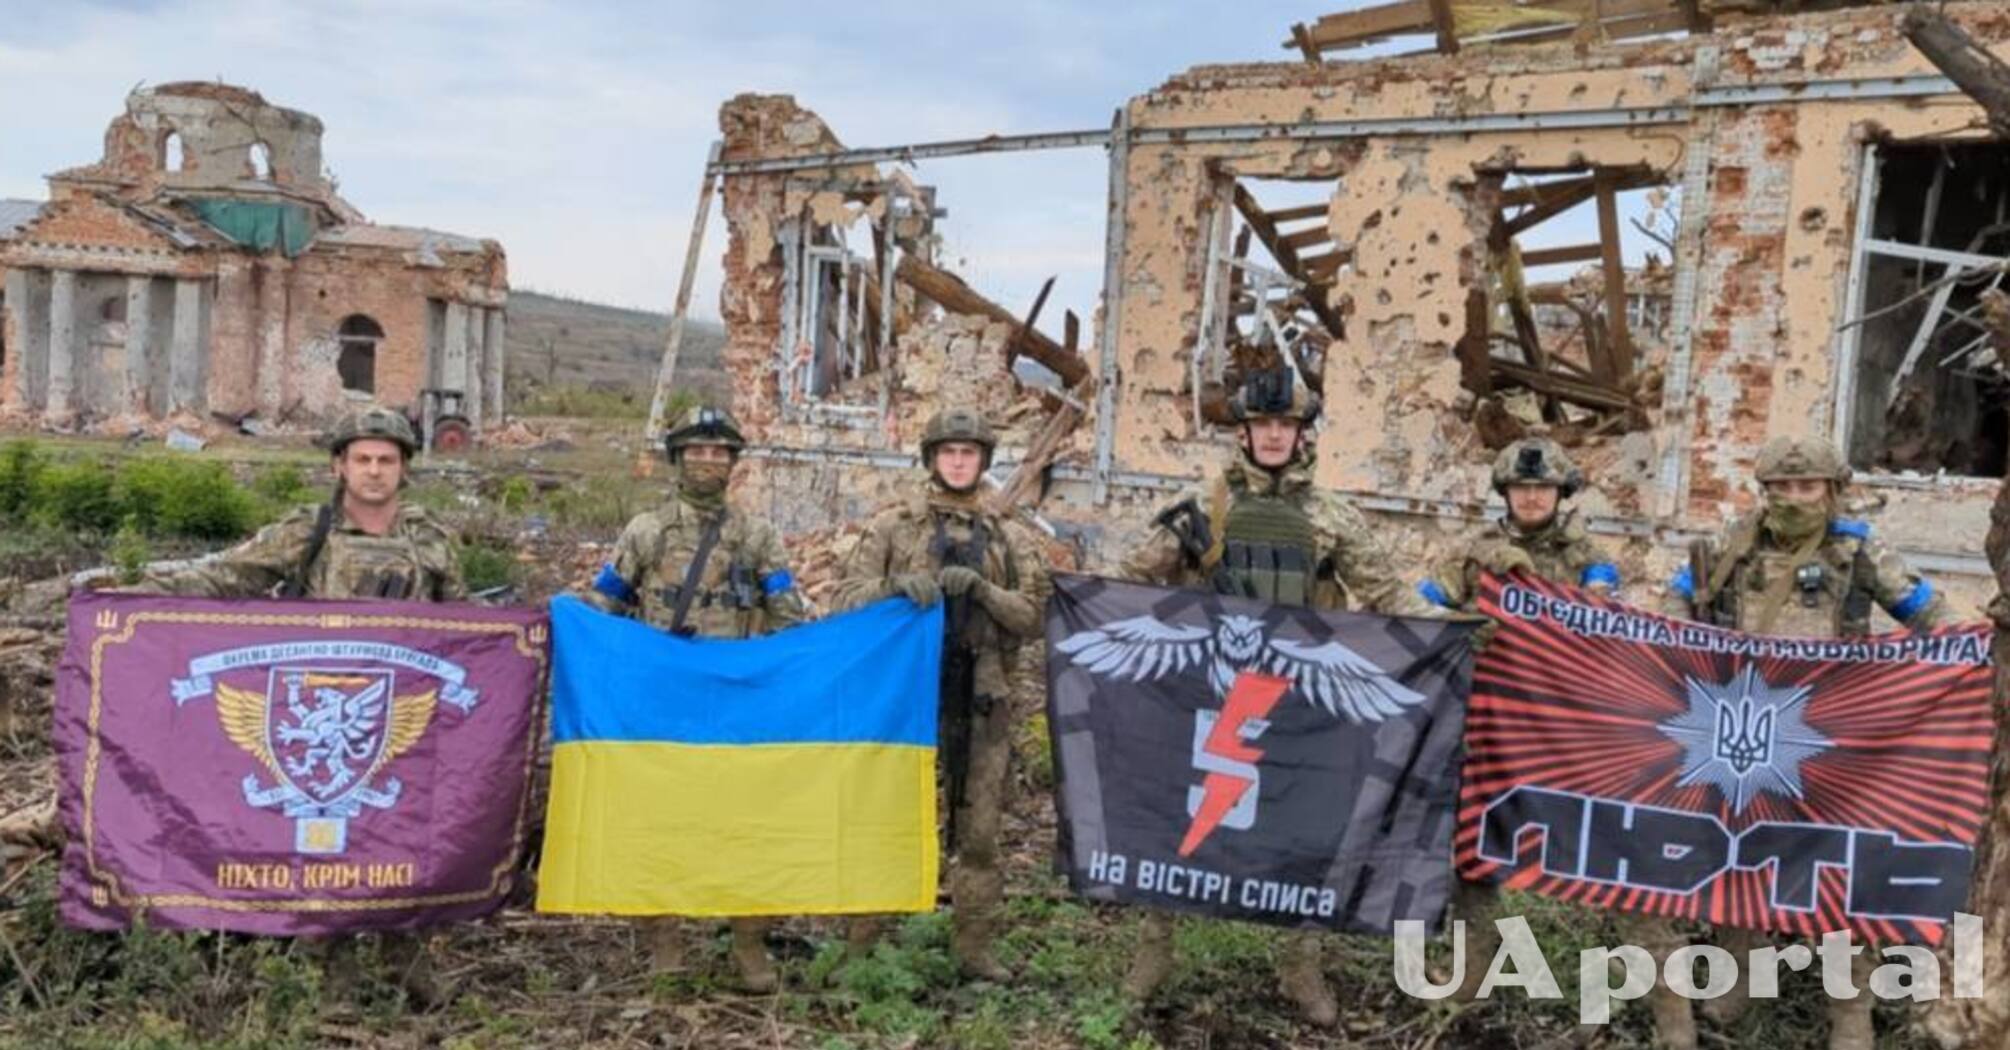 Штурмовая бригада 'Лють' подняла украинский флаг в Клещеевке: фото и видео